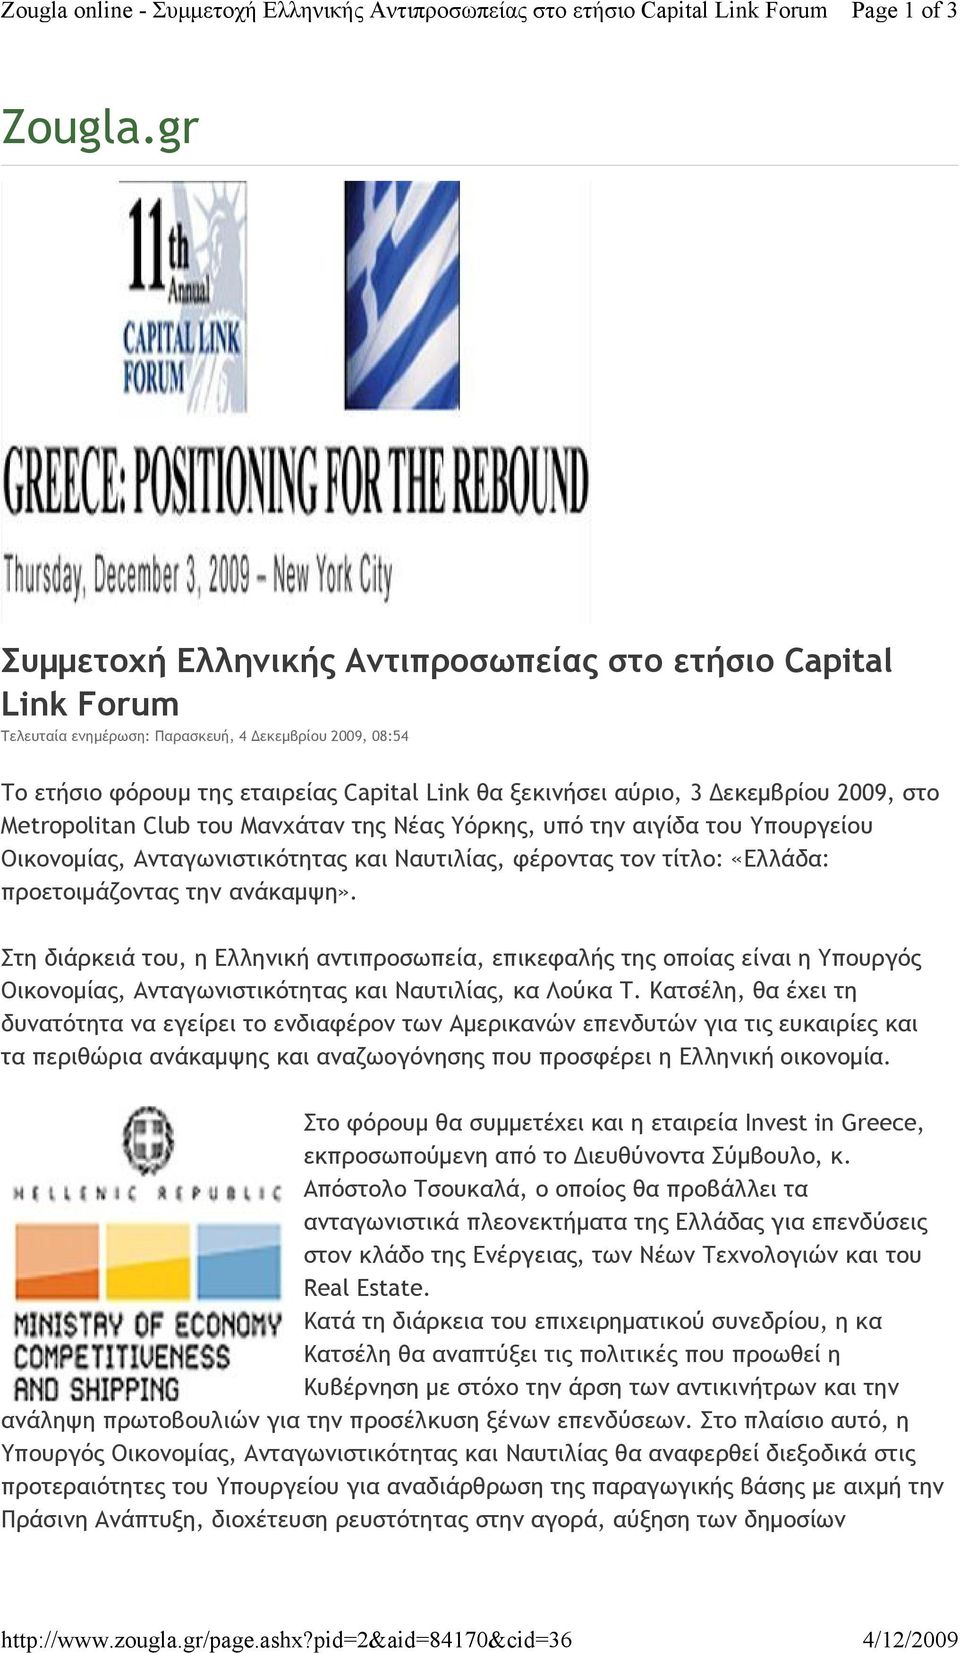 Δεκεμβρίου 2009, στο Metropolitan Club του Μανχάταν της Νέας Υόρκης, υπό την αιγίδα του Υπουργείου Οικονομίας, Ανταγωνιστικότητας και Ναυτιλίας, φέροντας τον τίτλο: «Ελλάδα: προετοιμάζοντας την